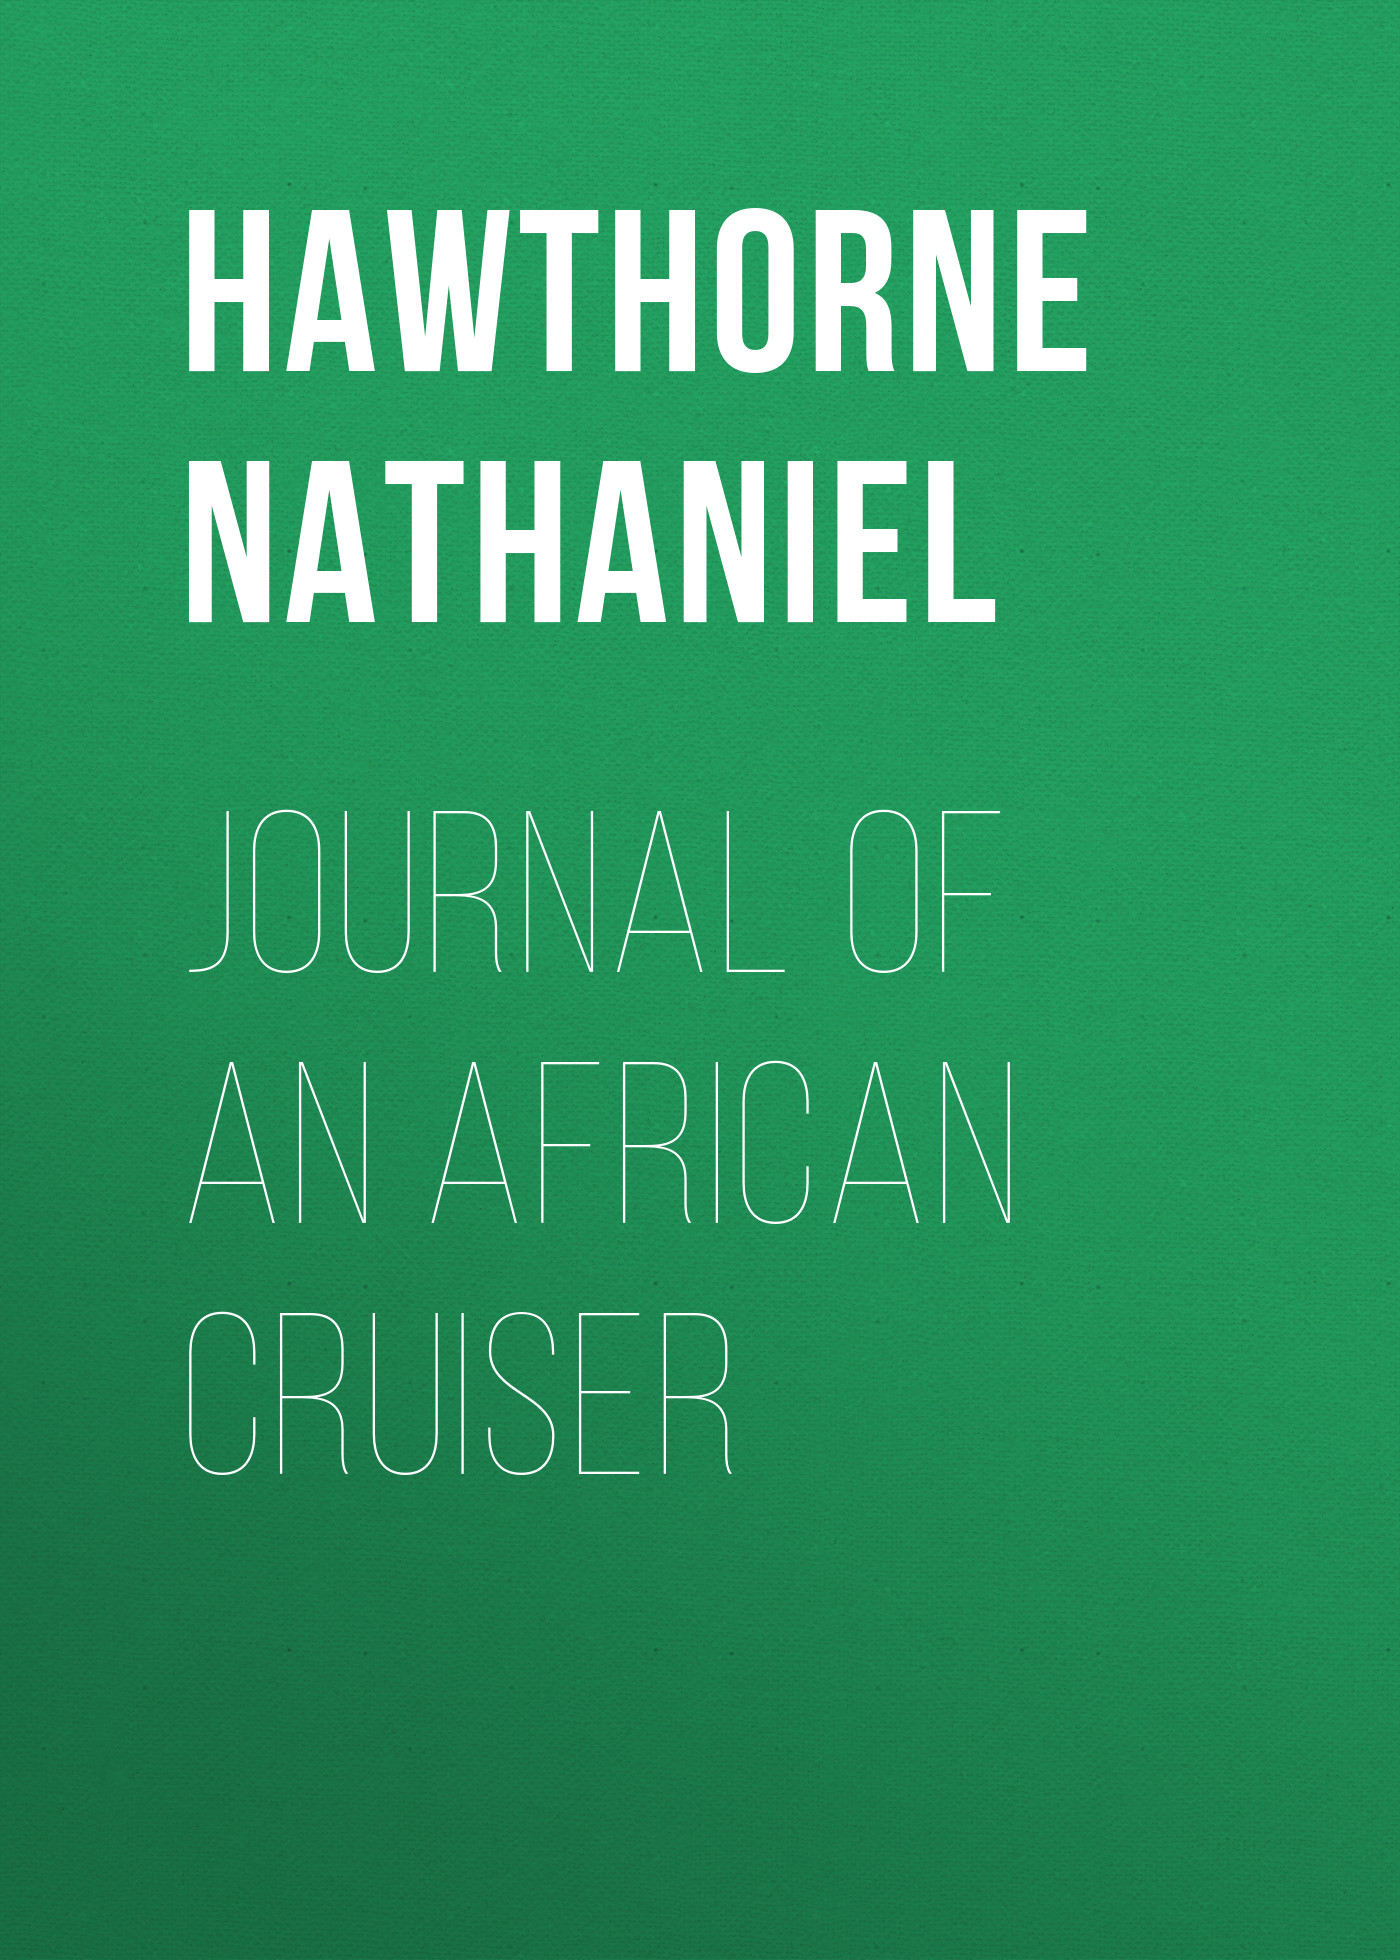 Книга Journal of an African Cruiser из серии , созданная Nathaniel Hawthorne, может относится к жанру Литература 19 века, Зарубежная старинная литература, Зарубежная классика. Стоимость электронной книги Journal of an African Cruiser с идентификатором 25559084 составляет 0 руб.